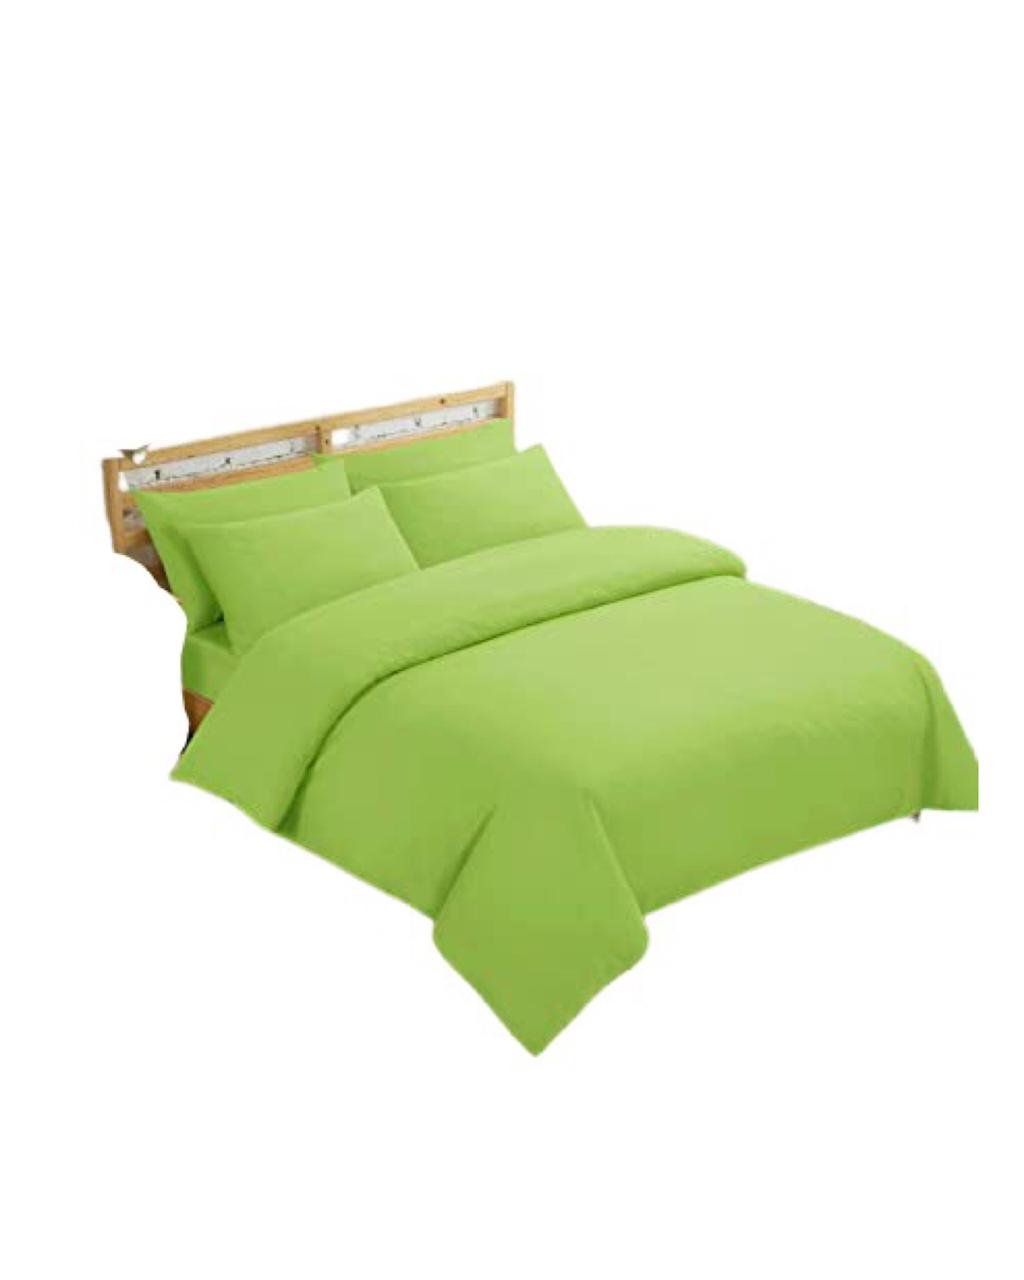 Twin Duvet Cover Set - Plain Color Green